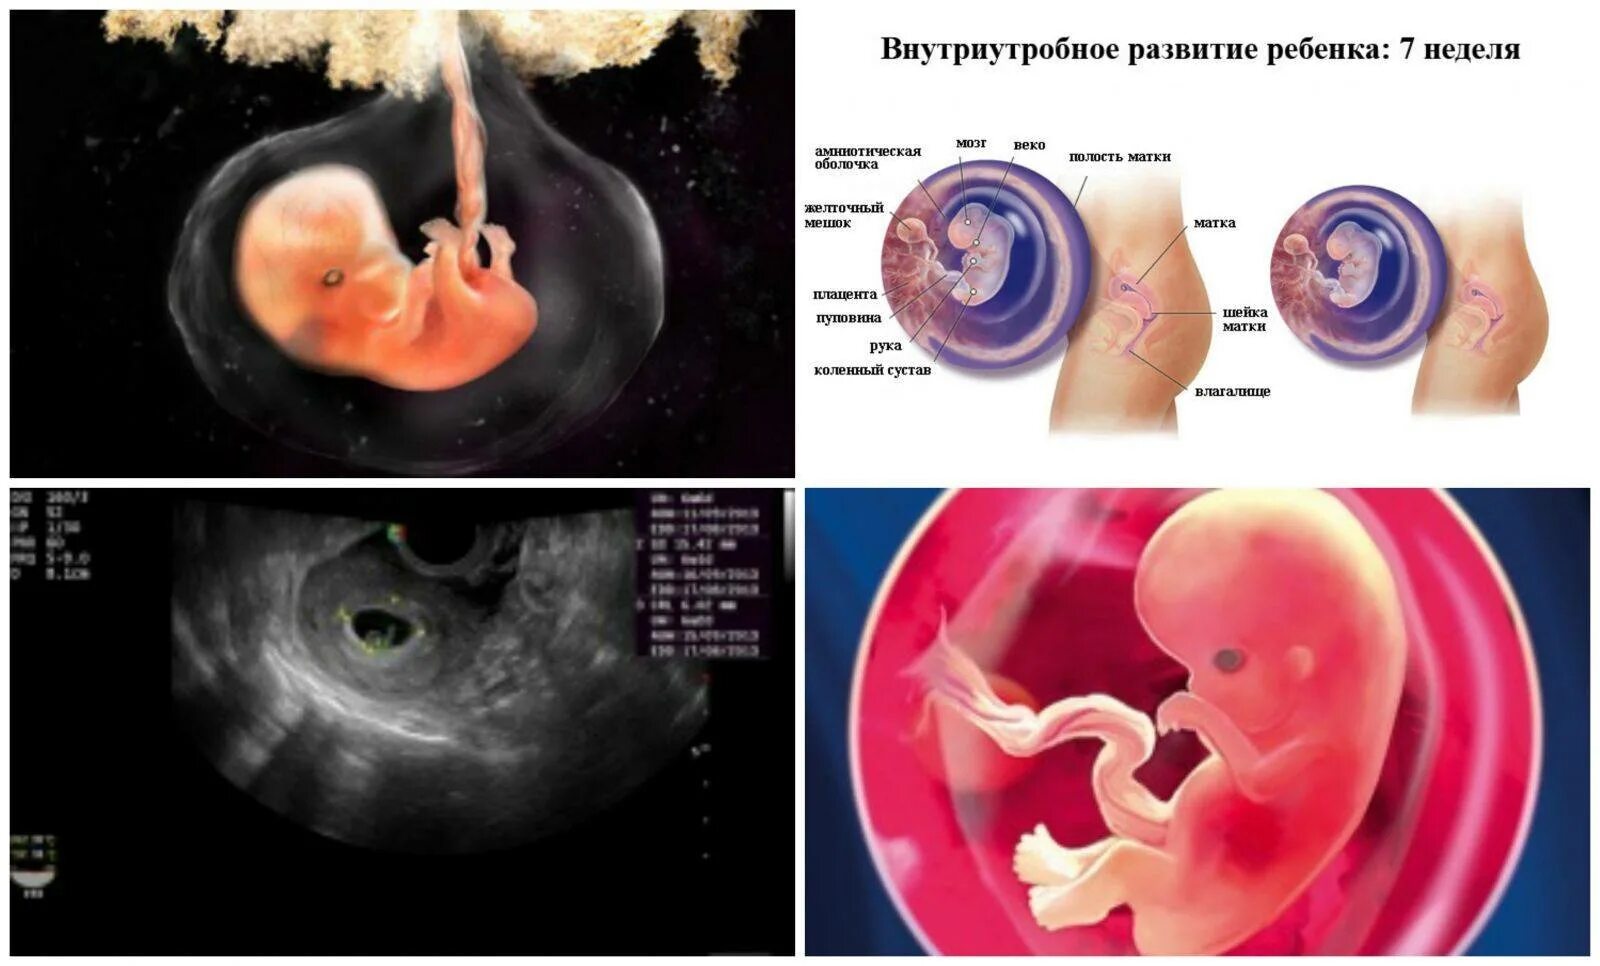 Матка 6 7 недель. Эмбрион по неделям беременности 6-7 недель. Плод эмбриона на 7 неделе беременности. Эмбрион по неделям беременности 7 недель беременности. Фото эмбриона по неделям беременности 7 недель.